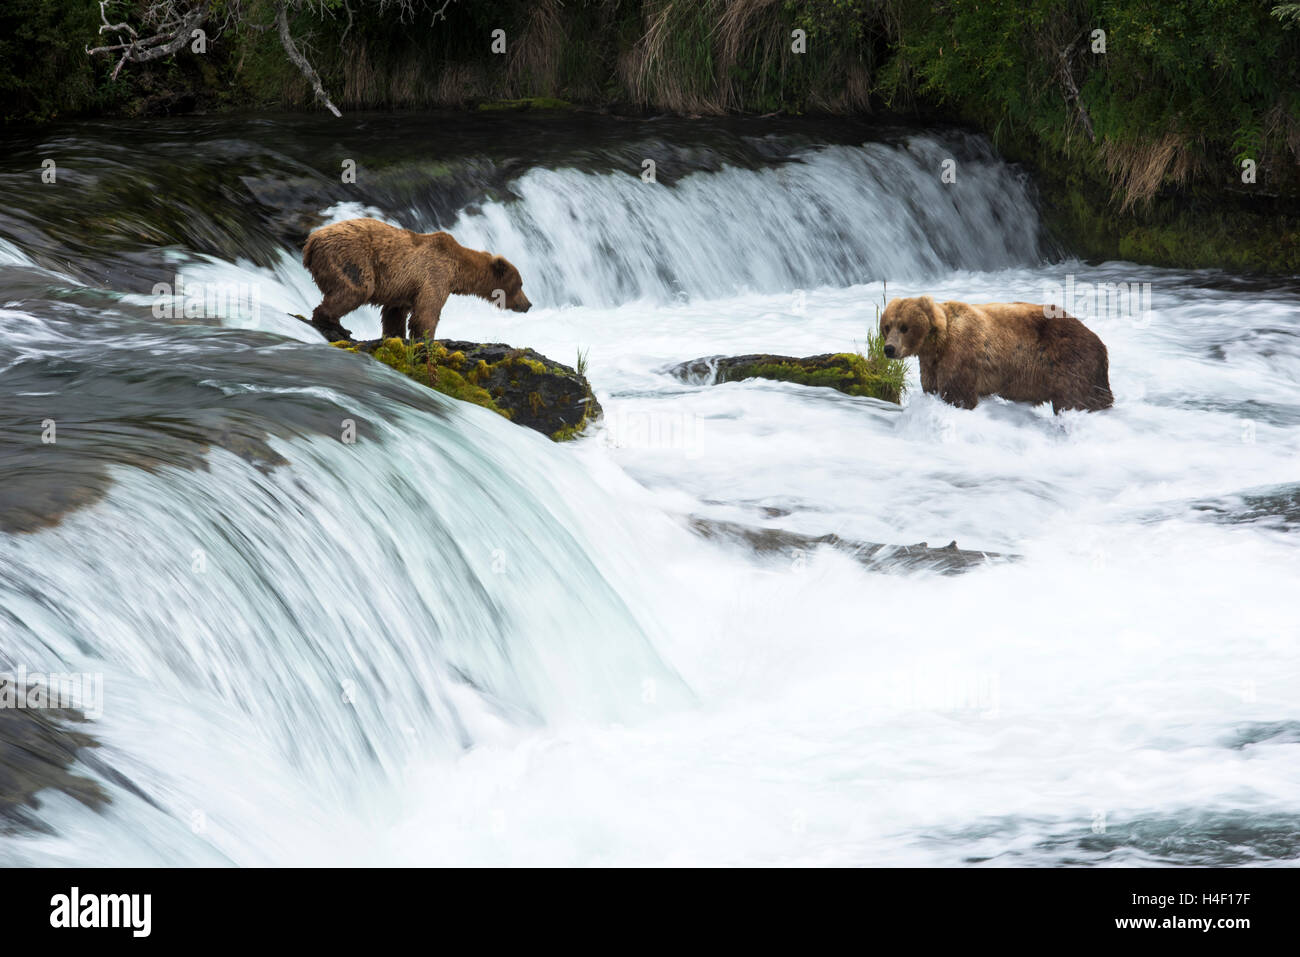 La chasse aux ours bruns du saumon dans la rivière, Brooks River, Katmai National Park, Alaska Banque D'Images